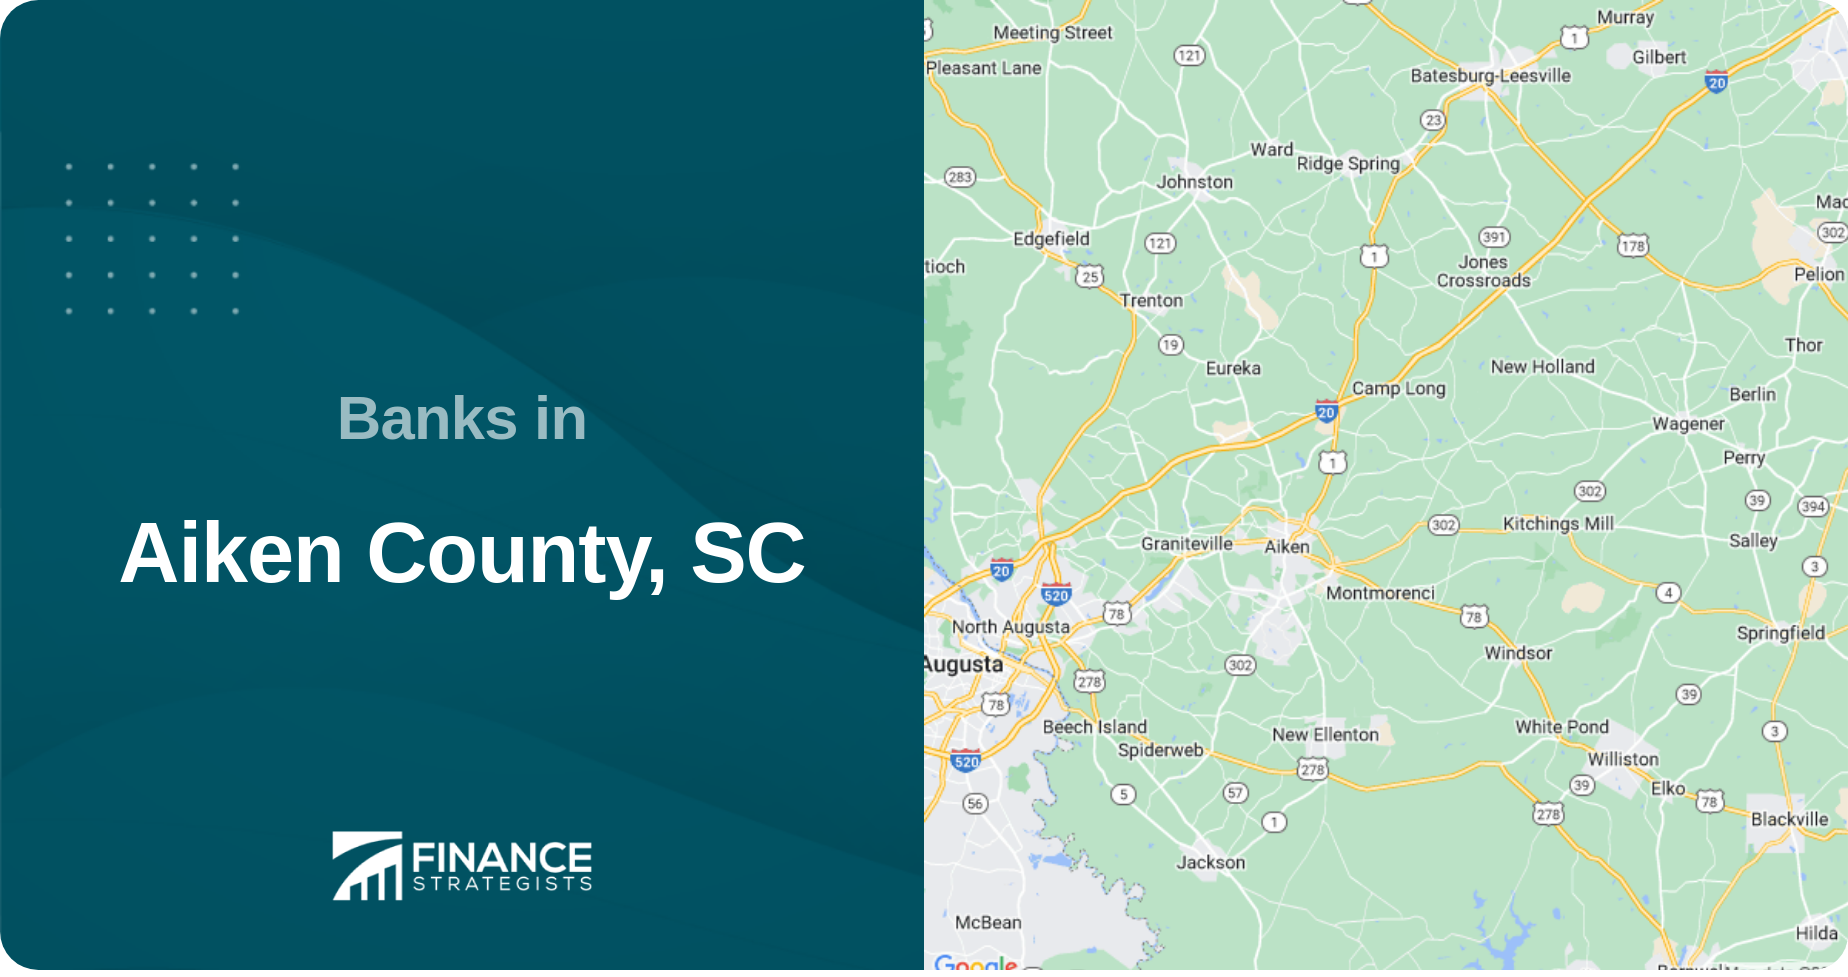 Banks in Aiken County, SC